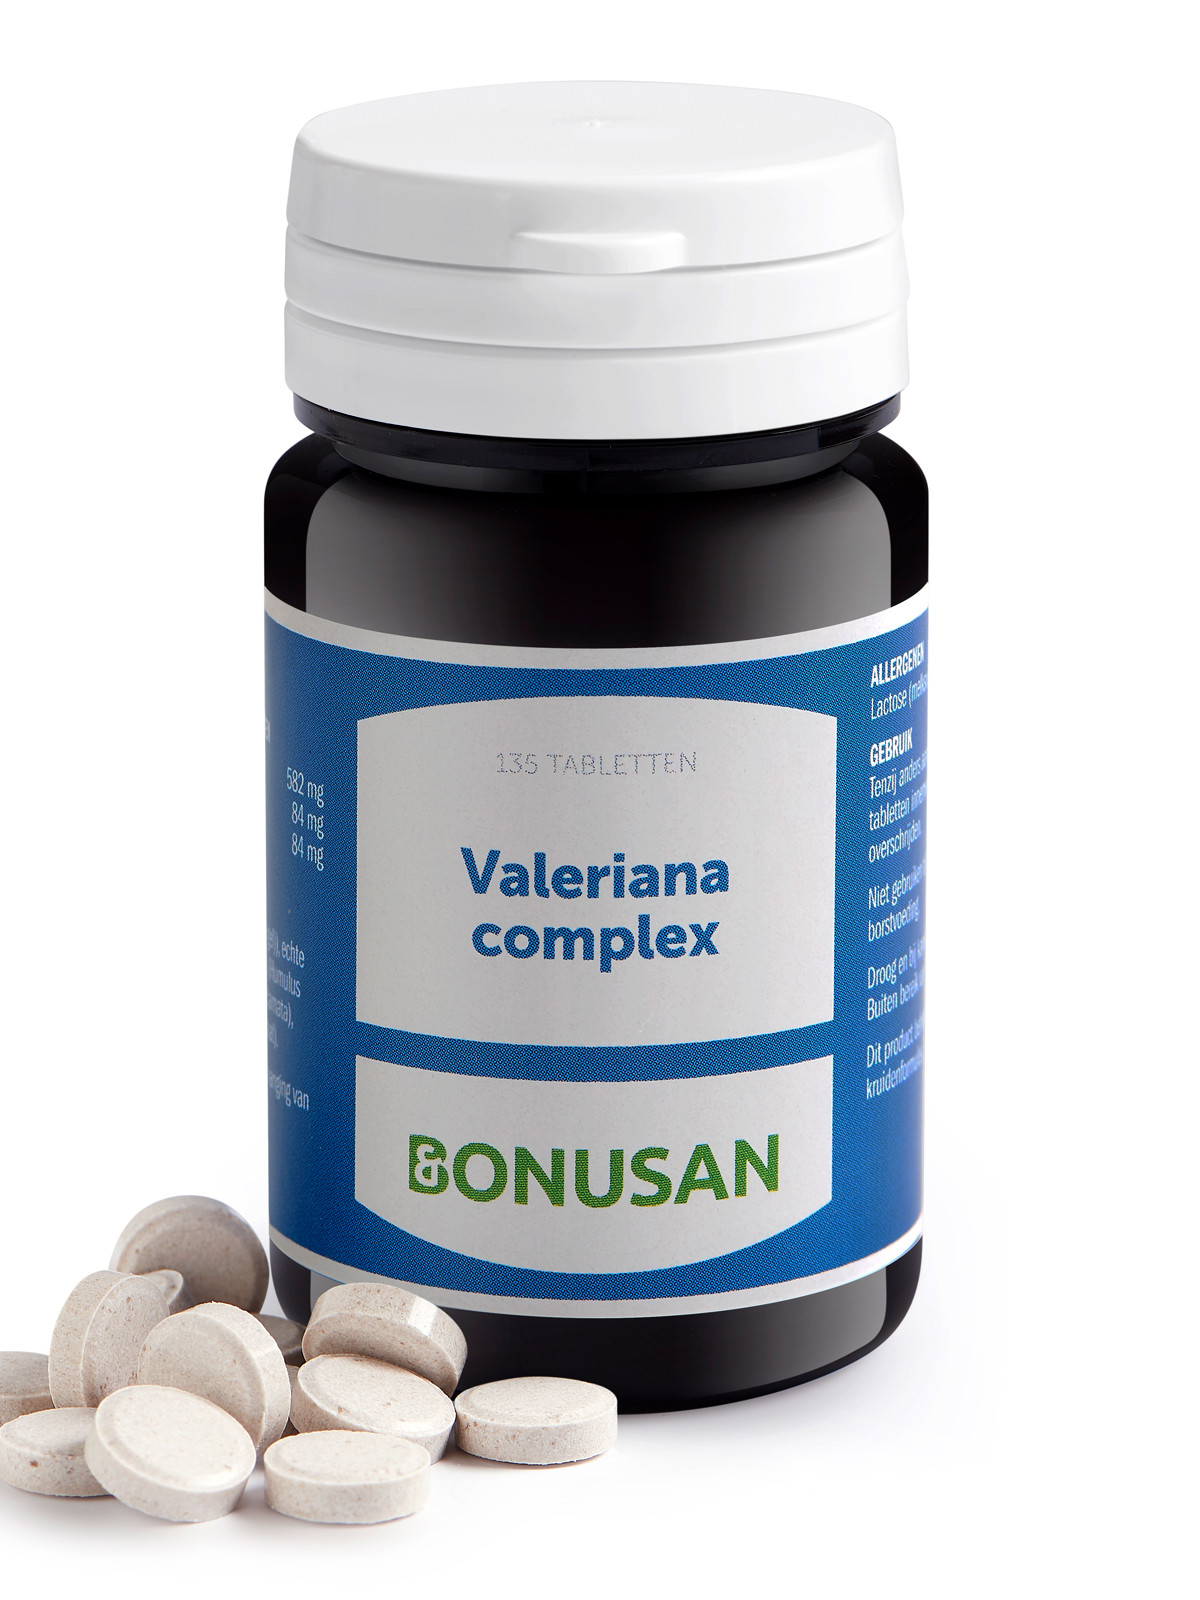 Bonusan - Valeriana complex (binnenkort uit assortiment)